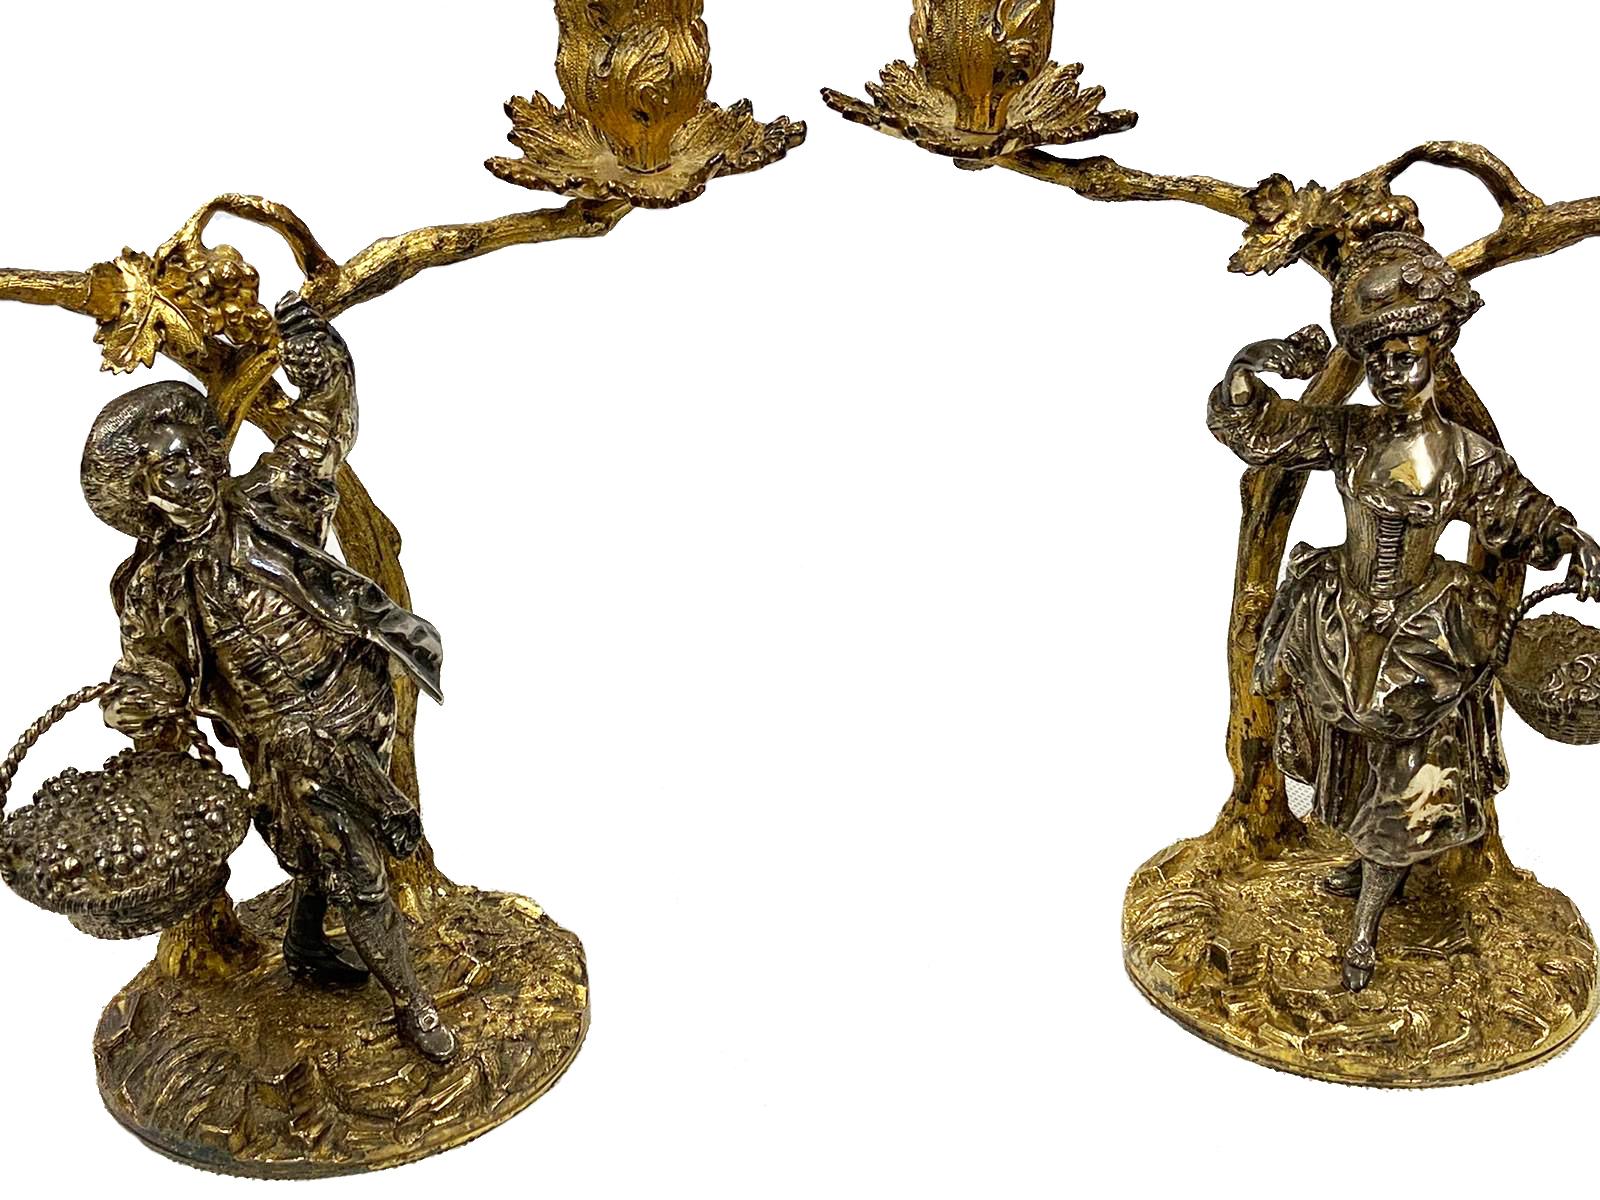 Ein hochwertiges Paar Kandelaber aus massivem Silber und vergoldet, von Aspreys of London, 20. Jahrhundert, mit der Darstellung von singenden Liebenden, die unter Zweigen Früchte pflücken.
Gewicht: 2737 Gramm (88 oz). Maße: 8.5